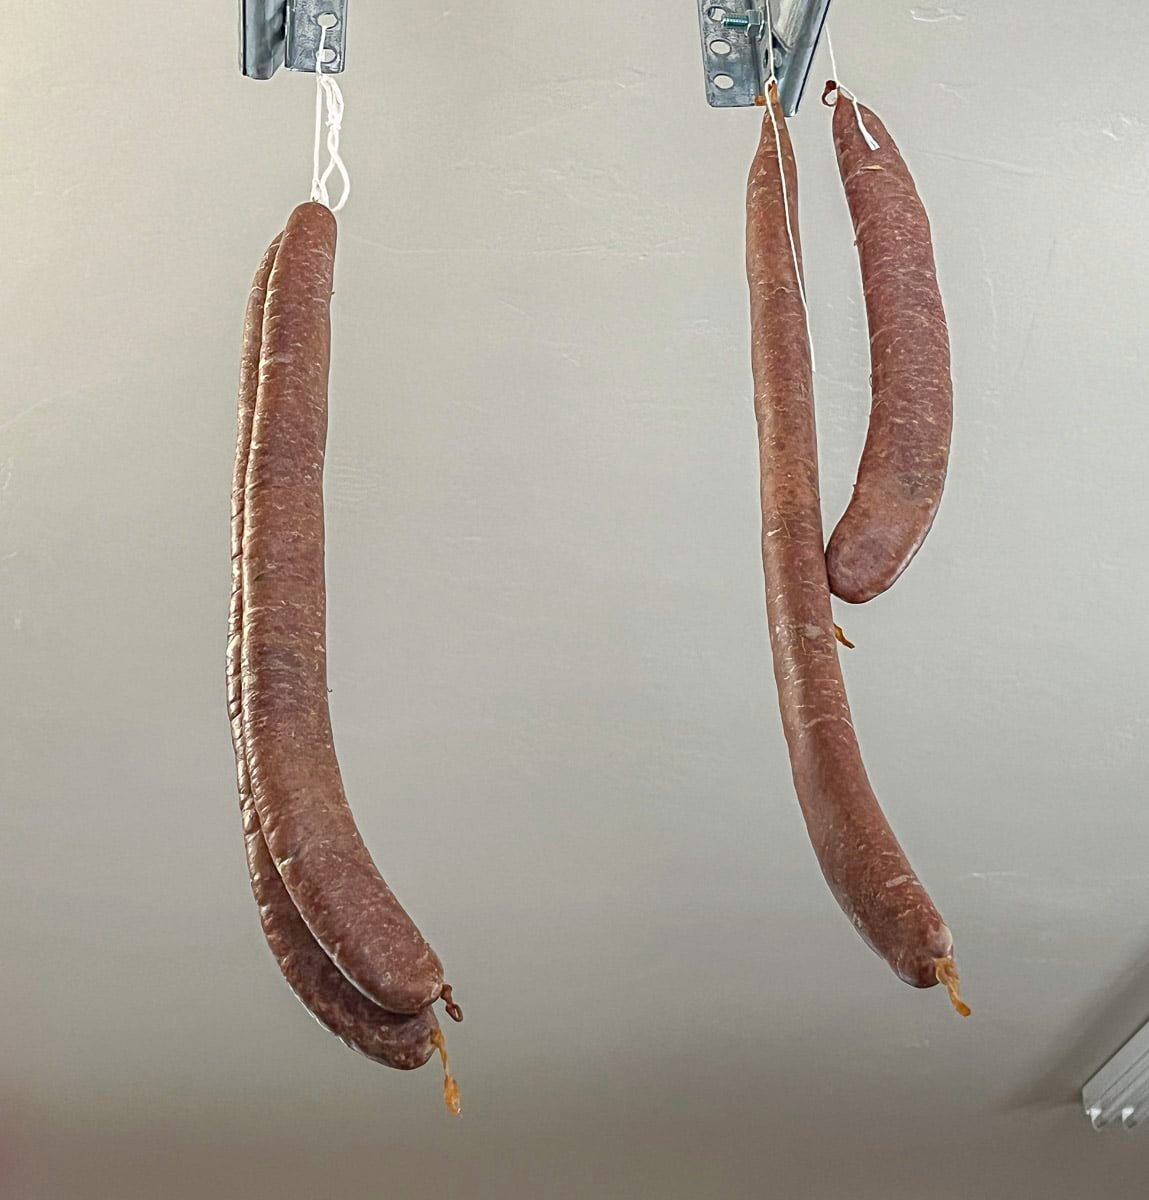 basturma sausage hanging to dry